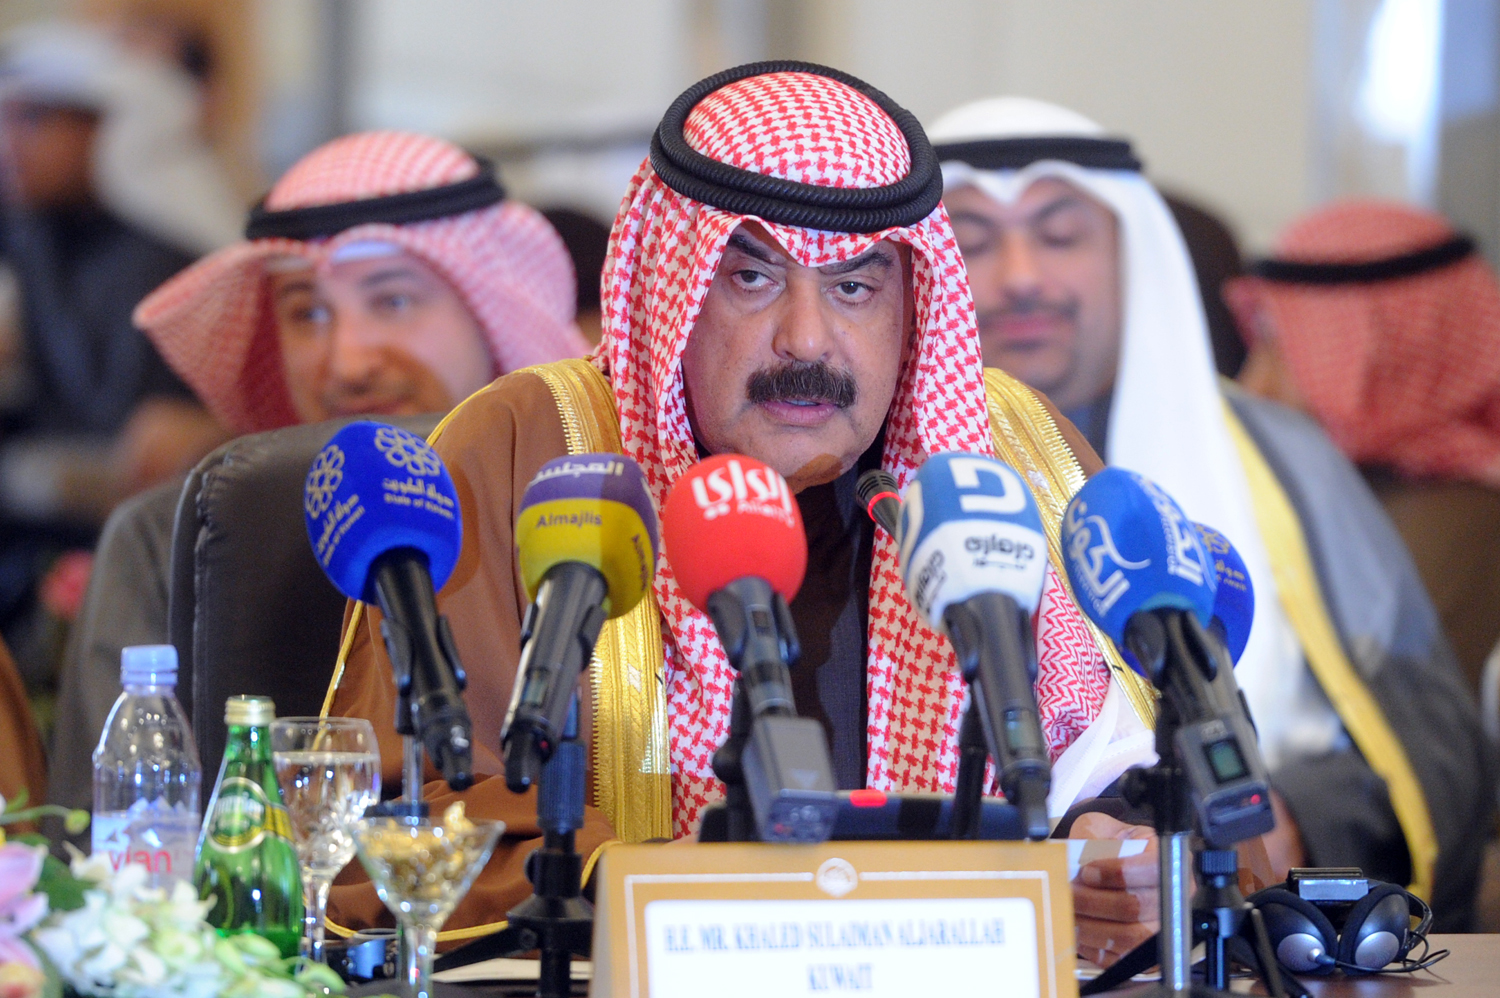 نائب وزير الخارجية الكويتي خالد الجارالله